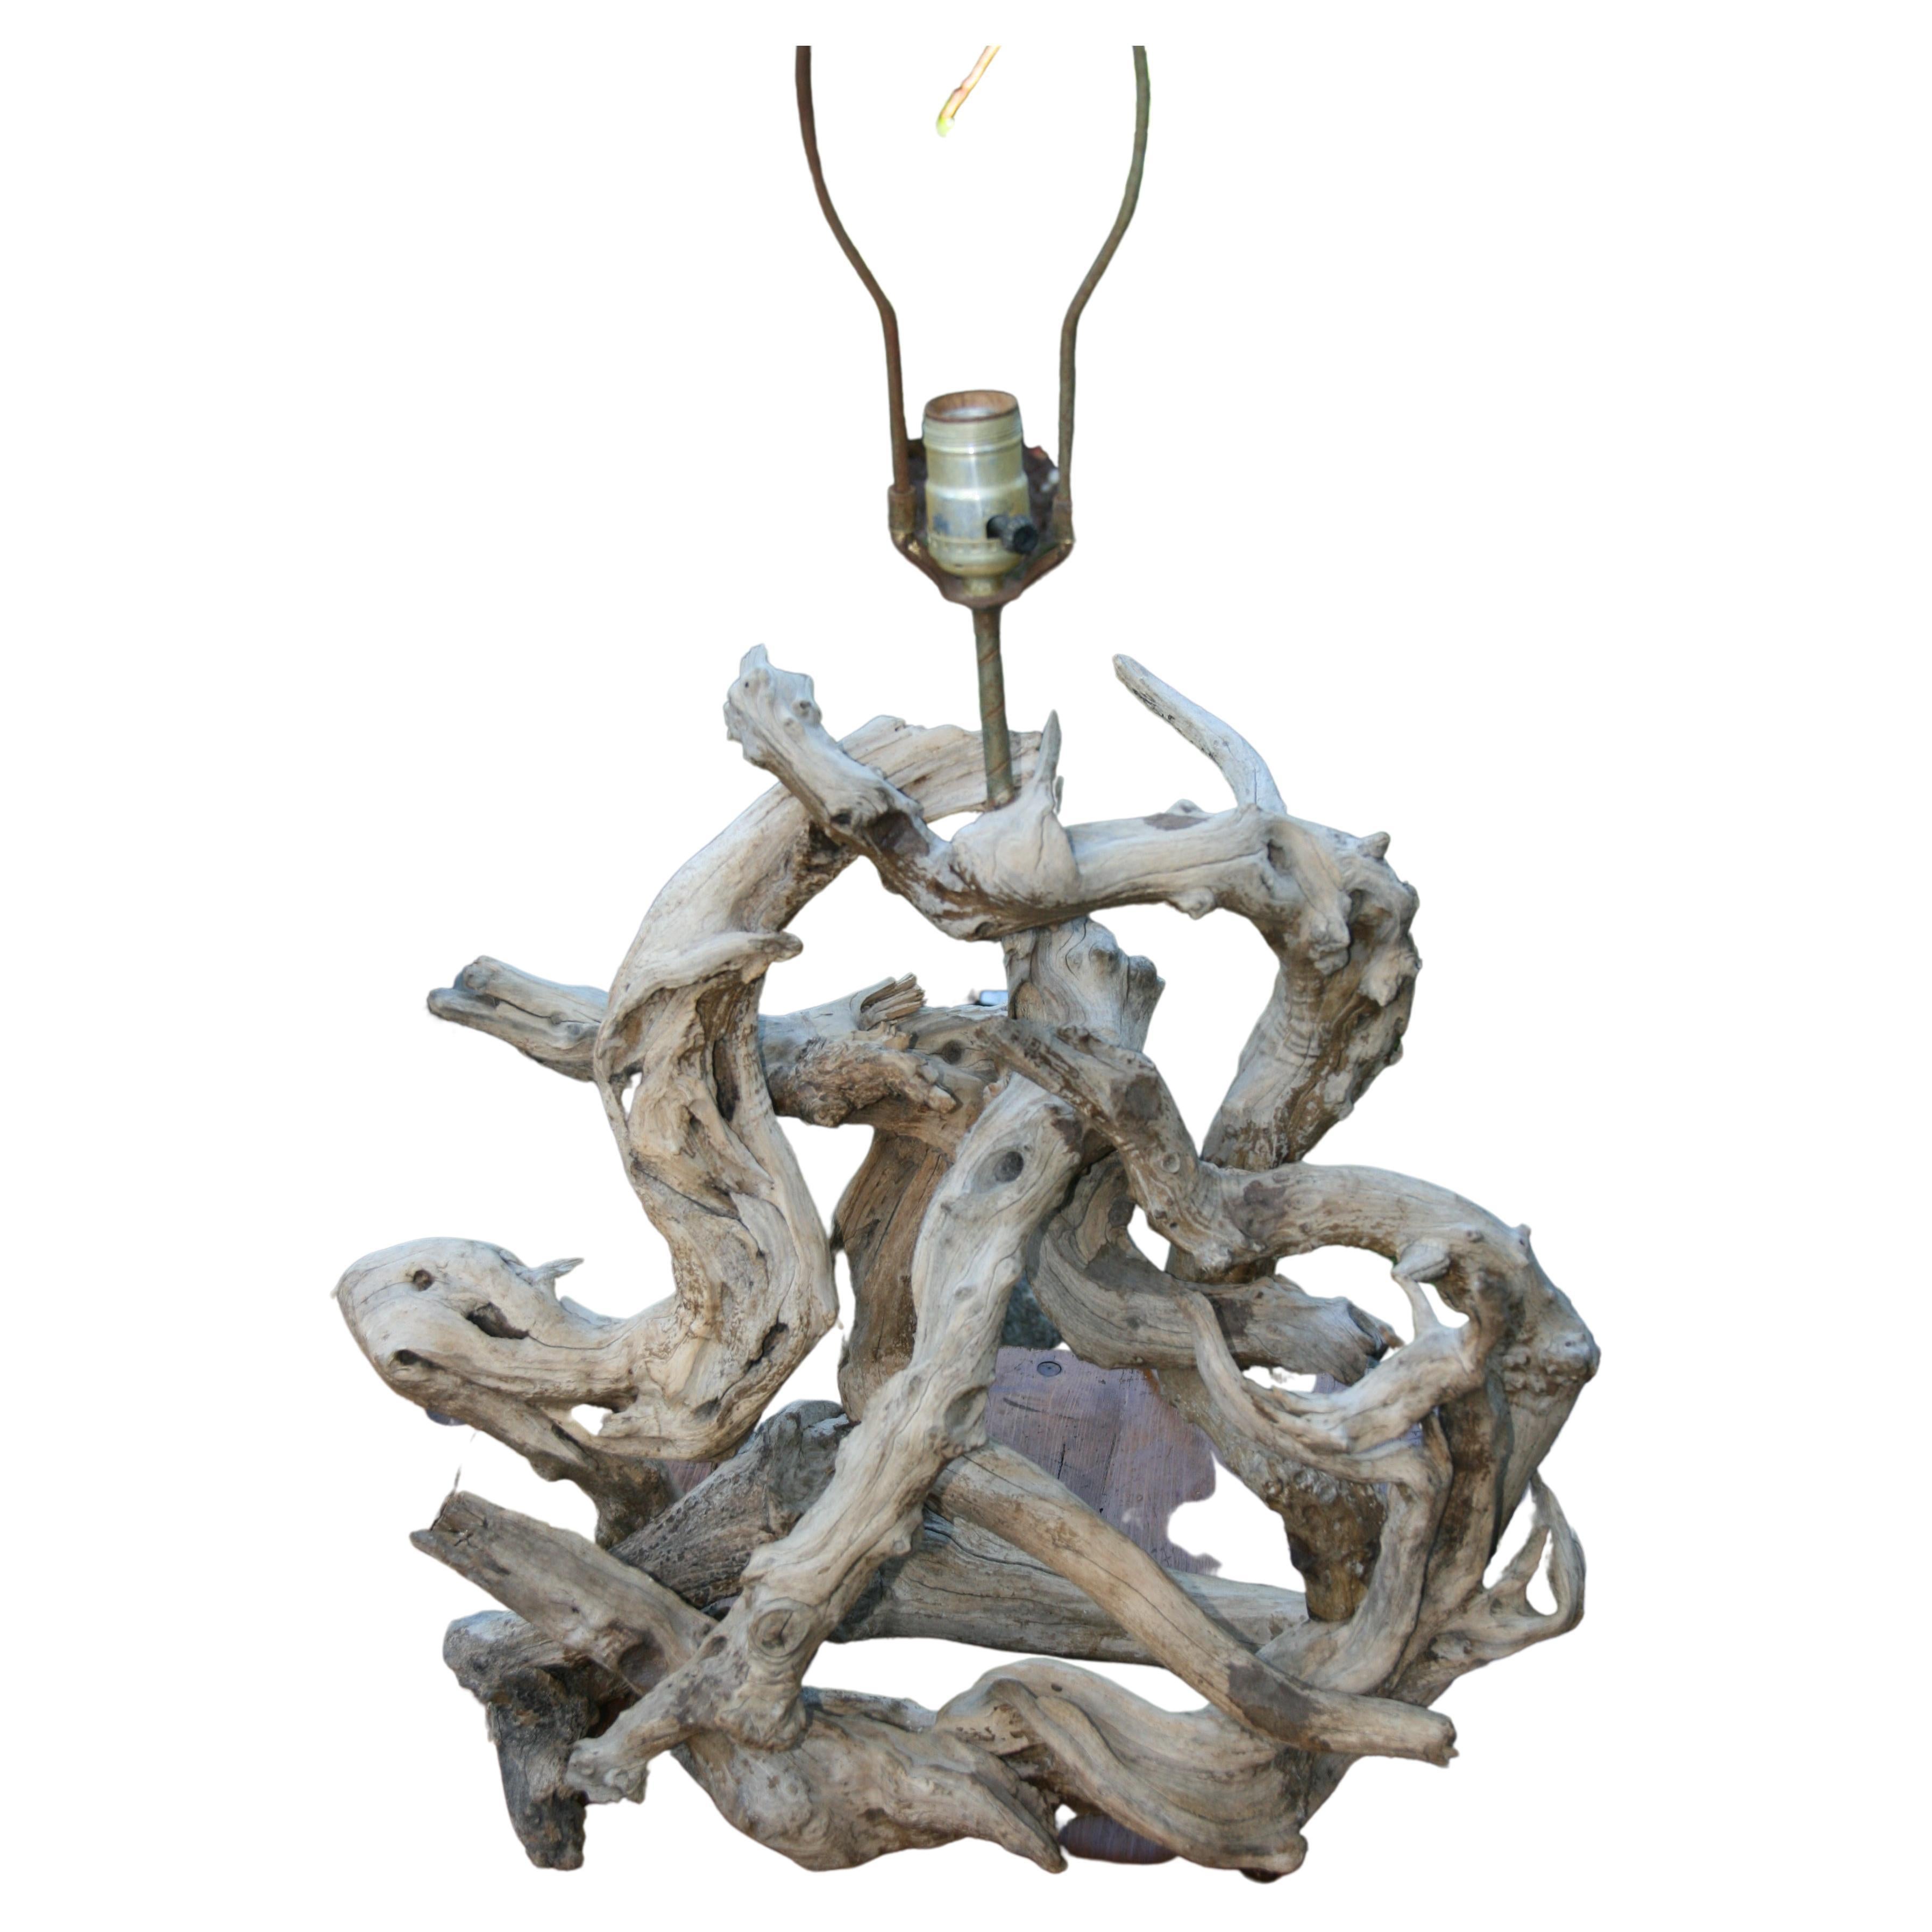 3-1120 Lampe en bois flotté naturel, sculpté par les vents et l'eau de la mer.
Câblage d'origine en état de marche. Le fil a été percé à travers le bois.
Hauteur au sommet de la prise 23